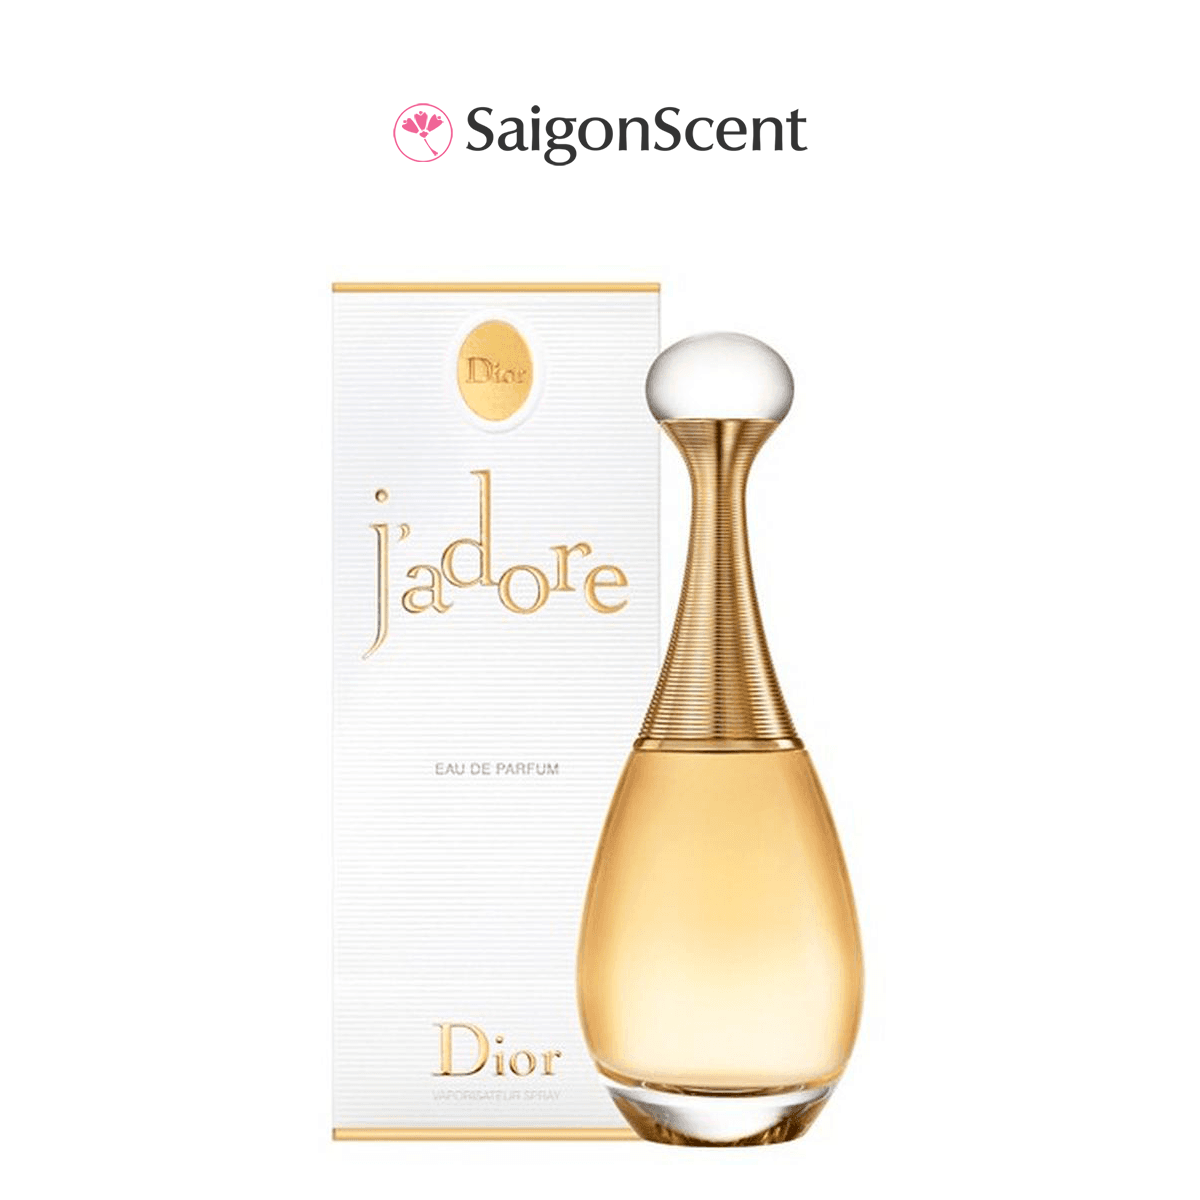 Nước hoa NỮ Dior JADORE 5mLNước hoa NỮ Dior JADORE 5mL  SaigonScent